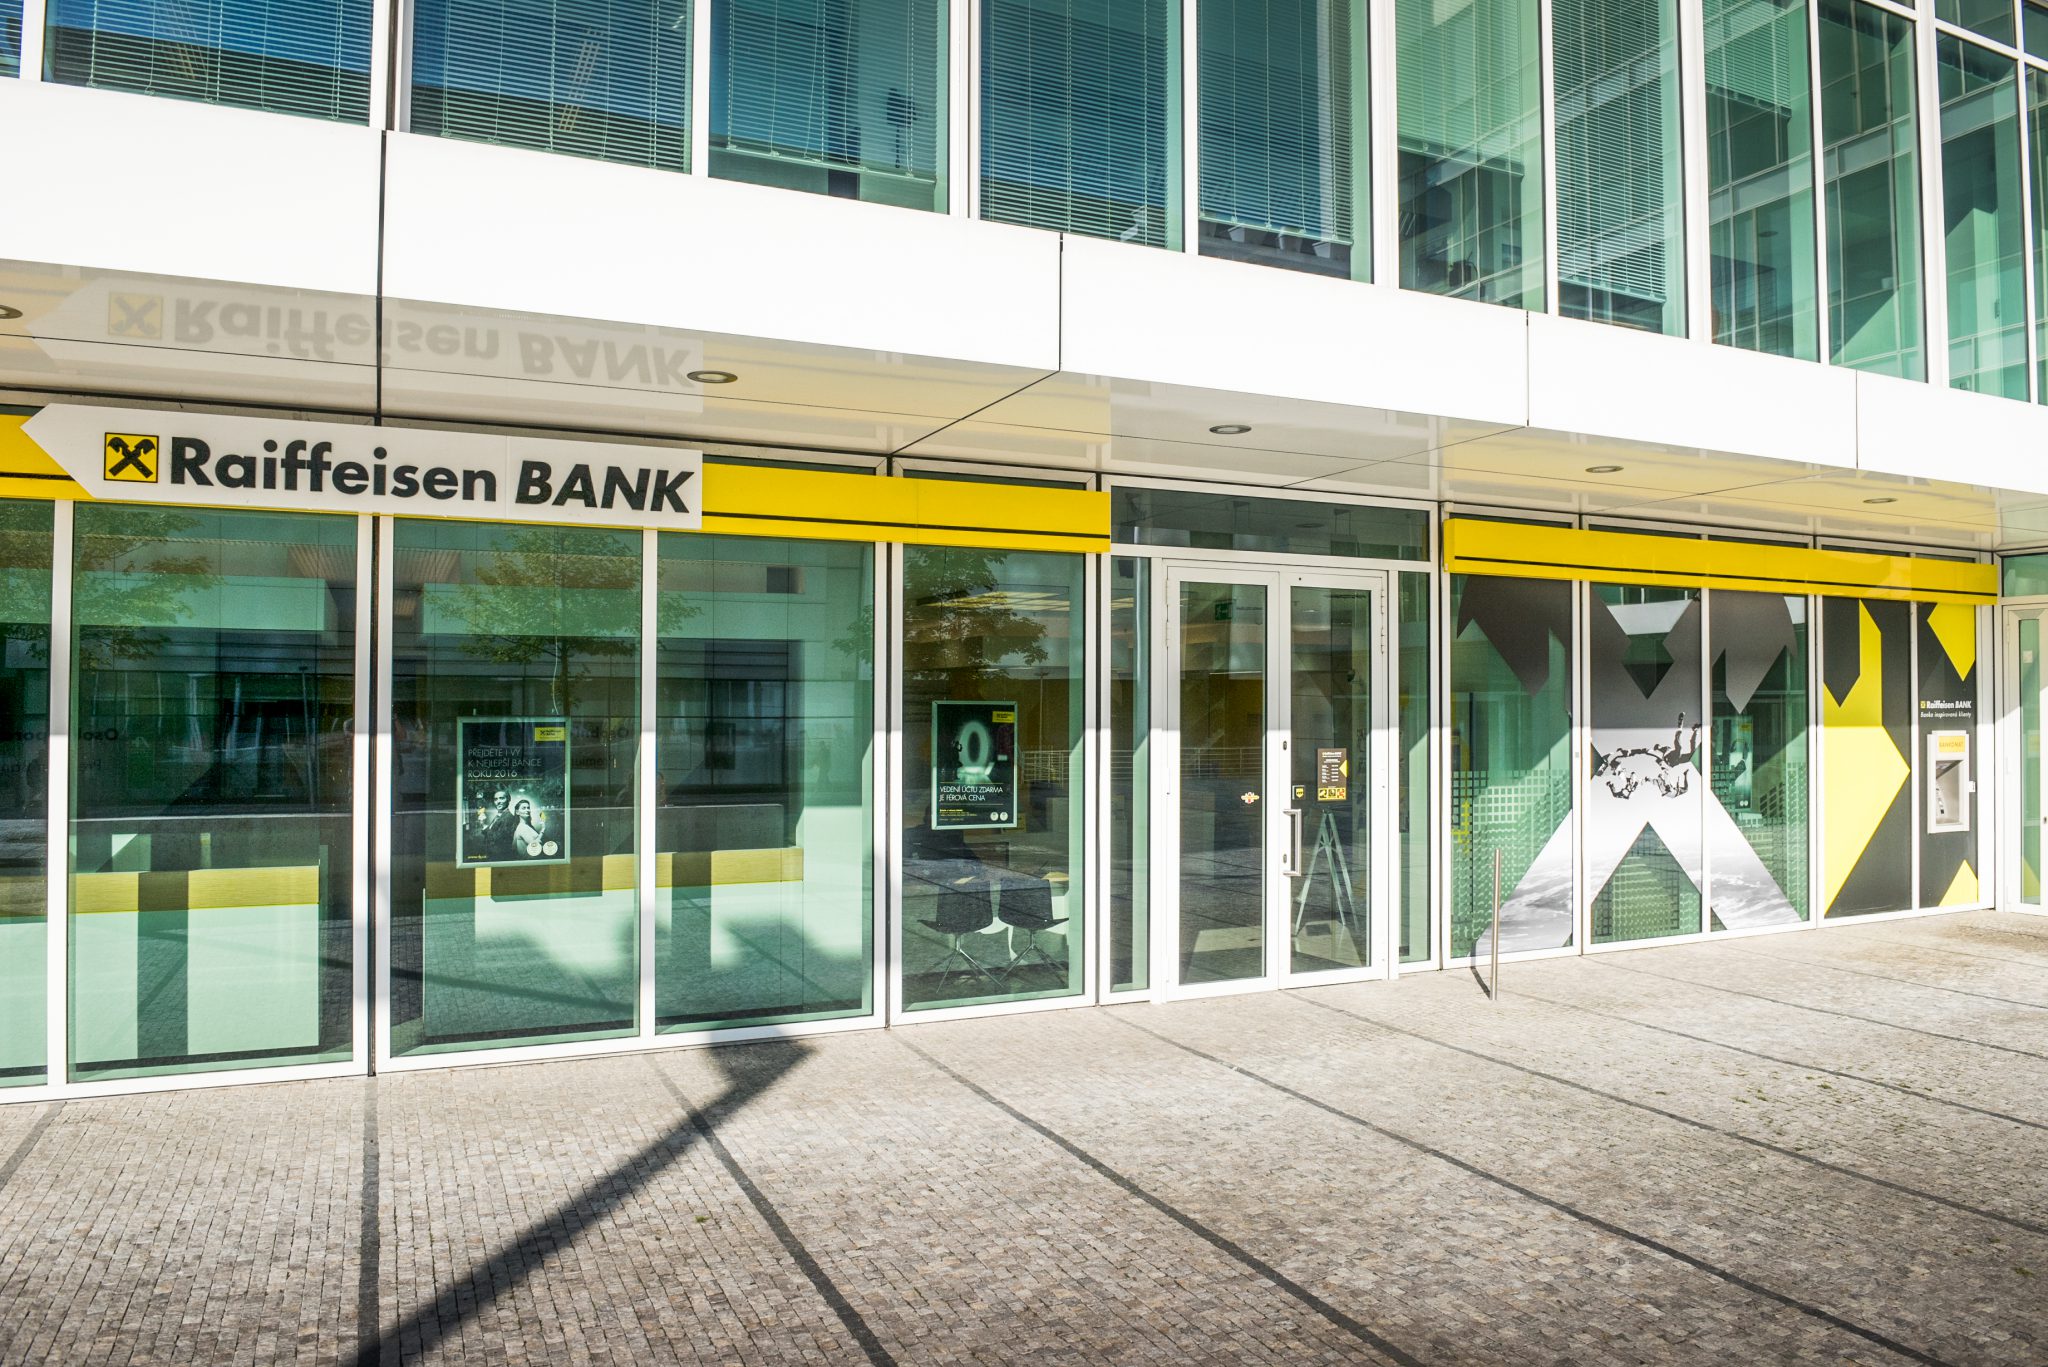 Raiffeisenbank & Proč se vyplácí kapacitní plánování? | ORBIT